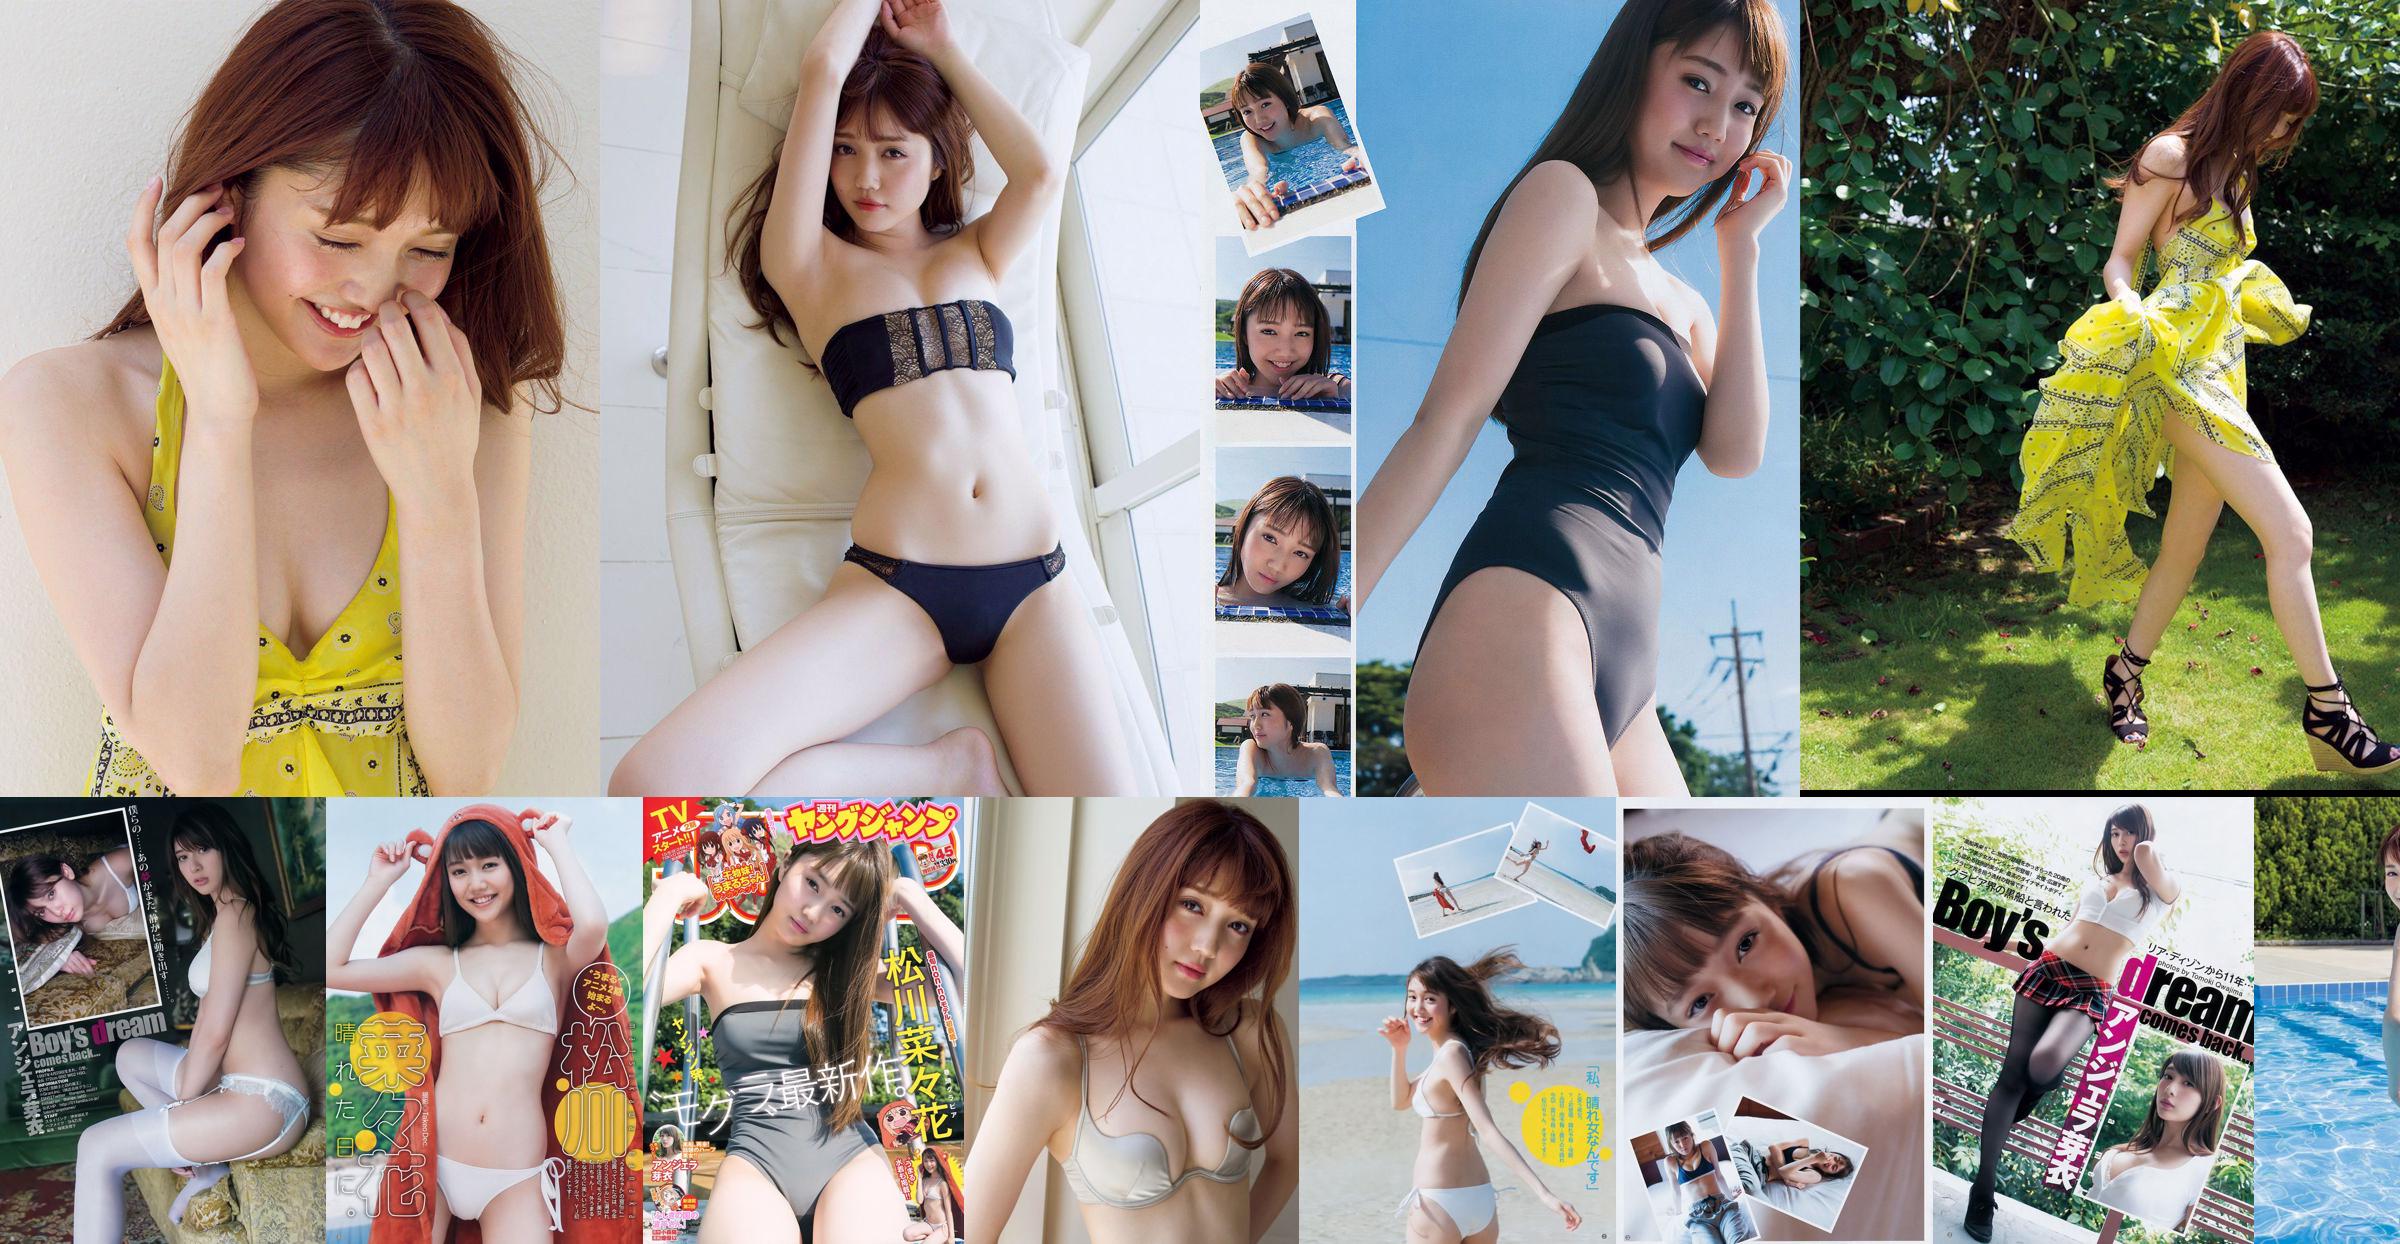 [ПЯТНИЦА] Нанака Мацукава << Популярная модель в купальнике - потрясающее свидание с 20-летней сексуальной привлекательностью (с видео) >> Фото No.f442a7 Страница 1